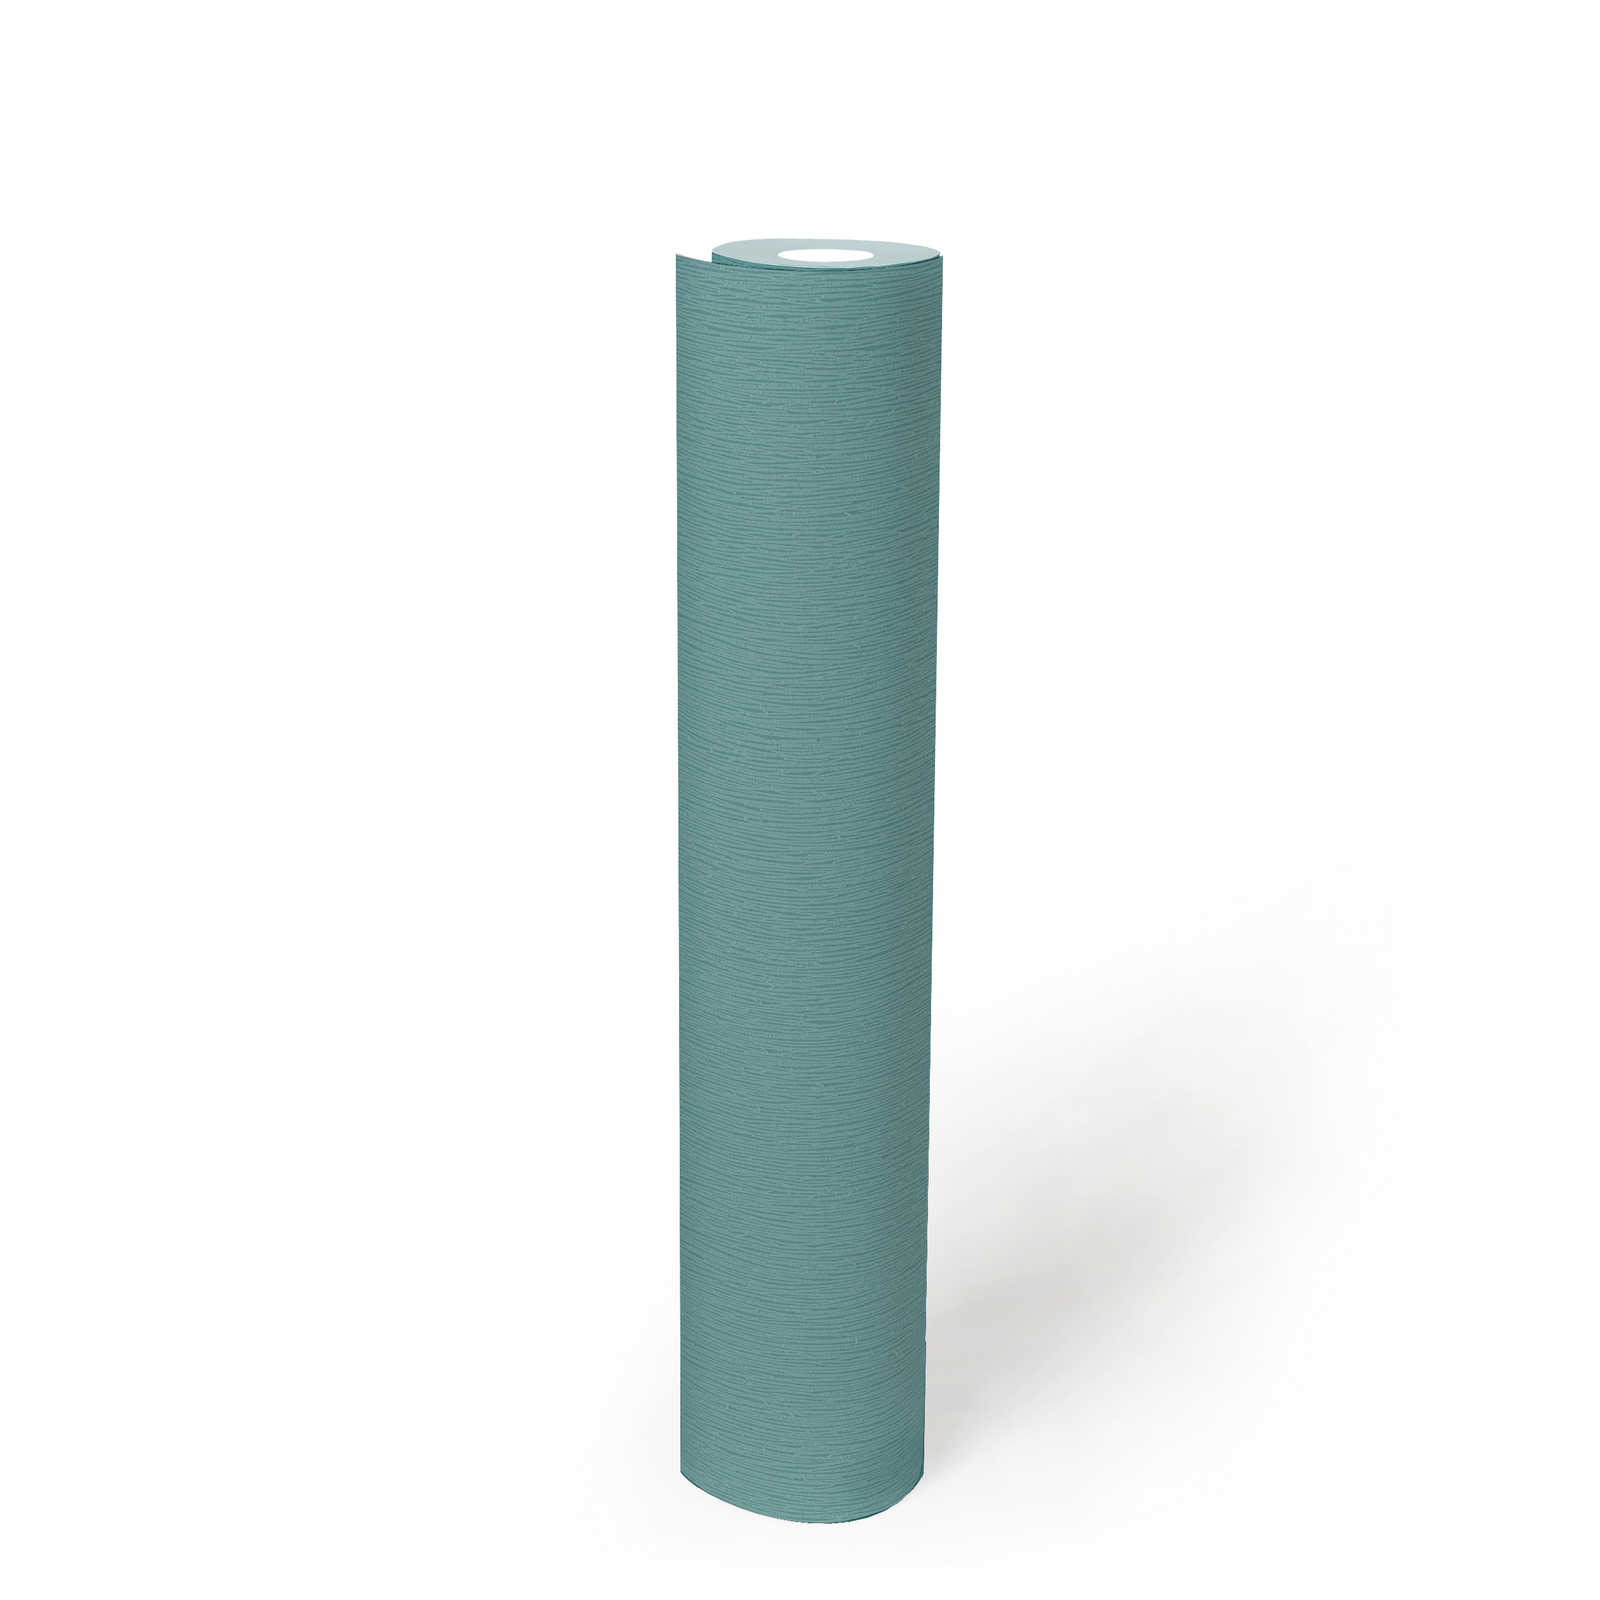             Papier peint intissé turquoise avec motif structuré naturel ton sur ton - bleu, vert
        